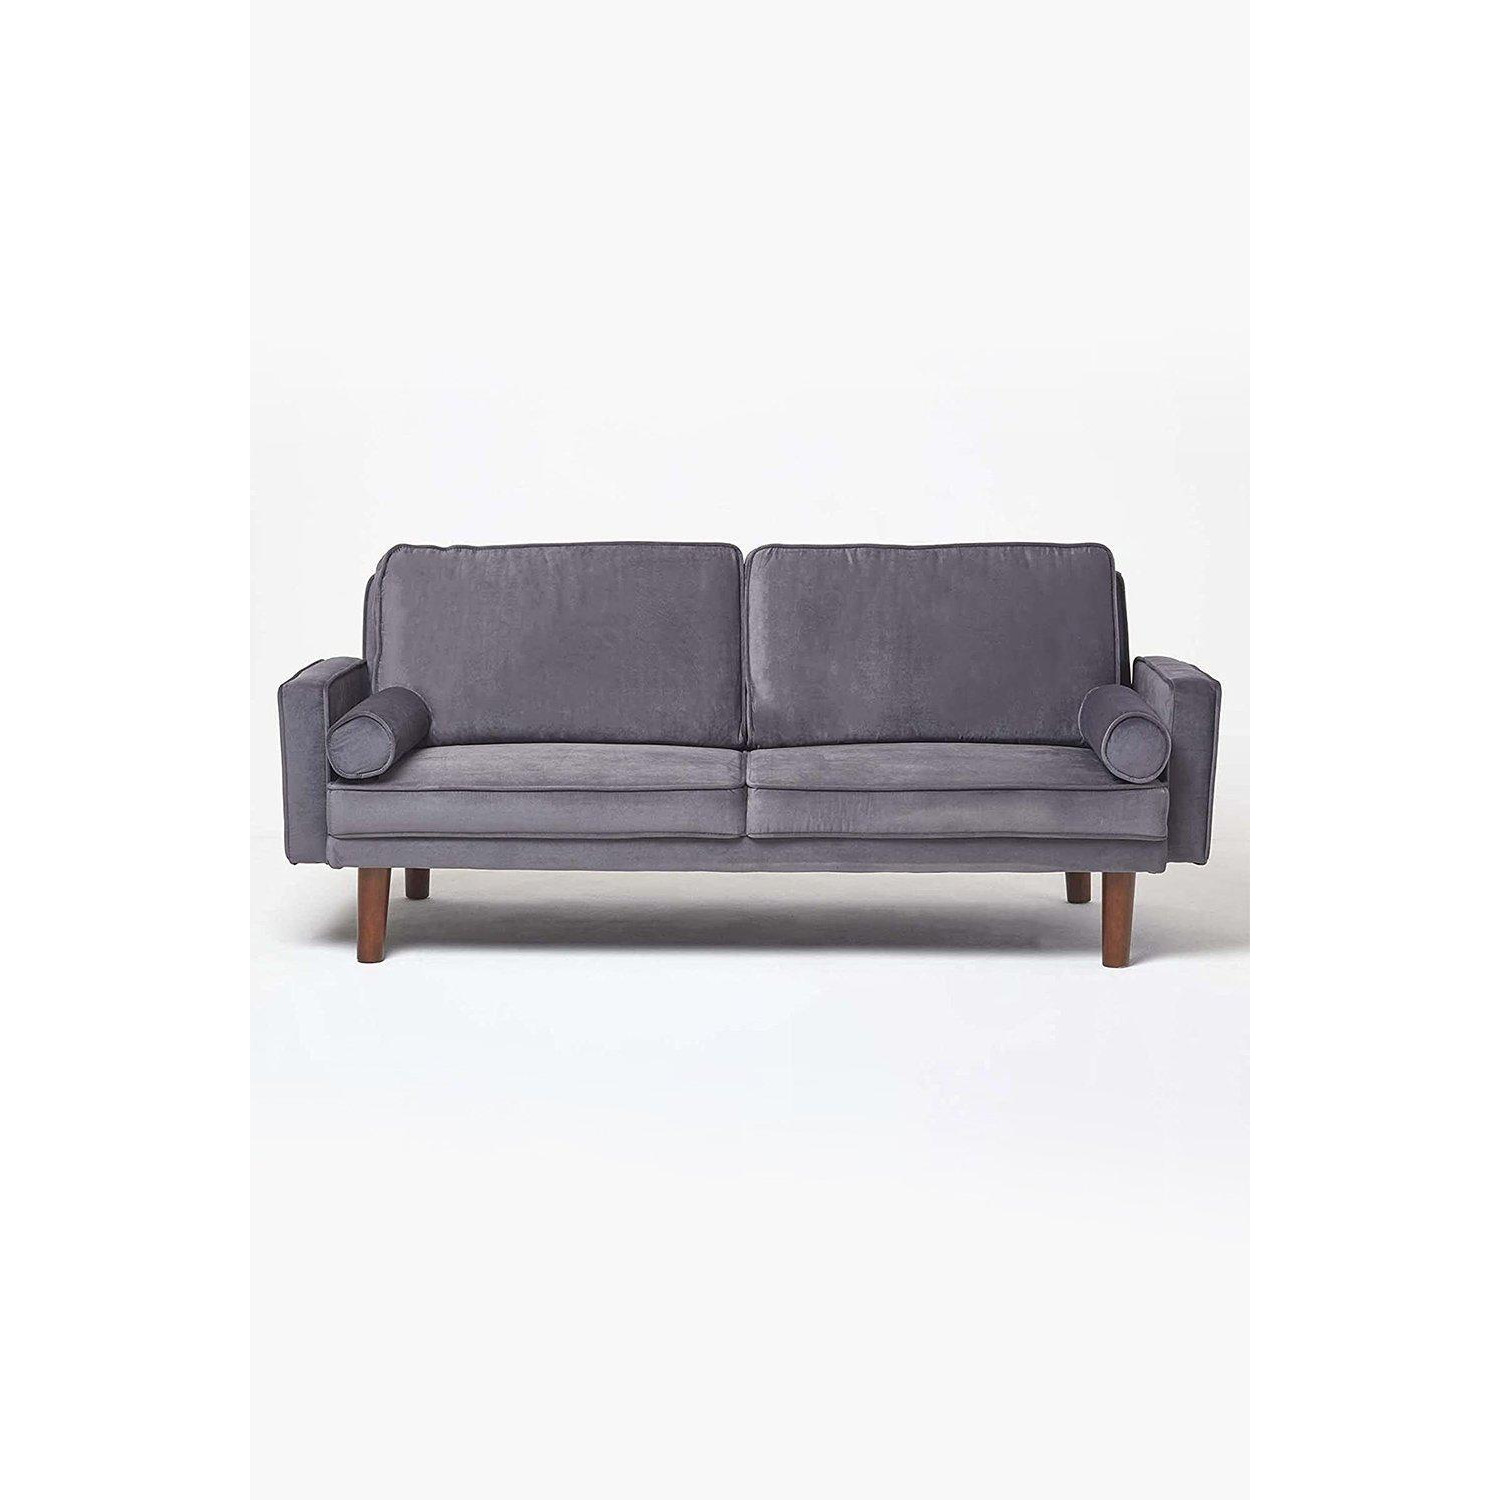 Stanley Velvet Click Clack Sofa Bed with Armrests - image 1